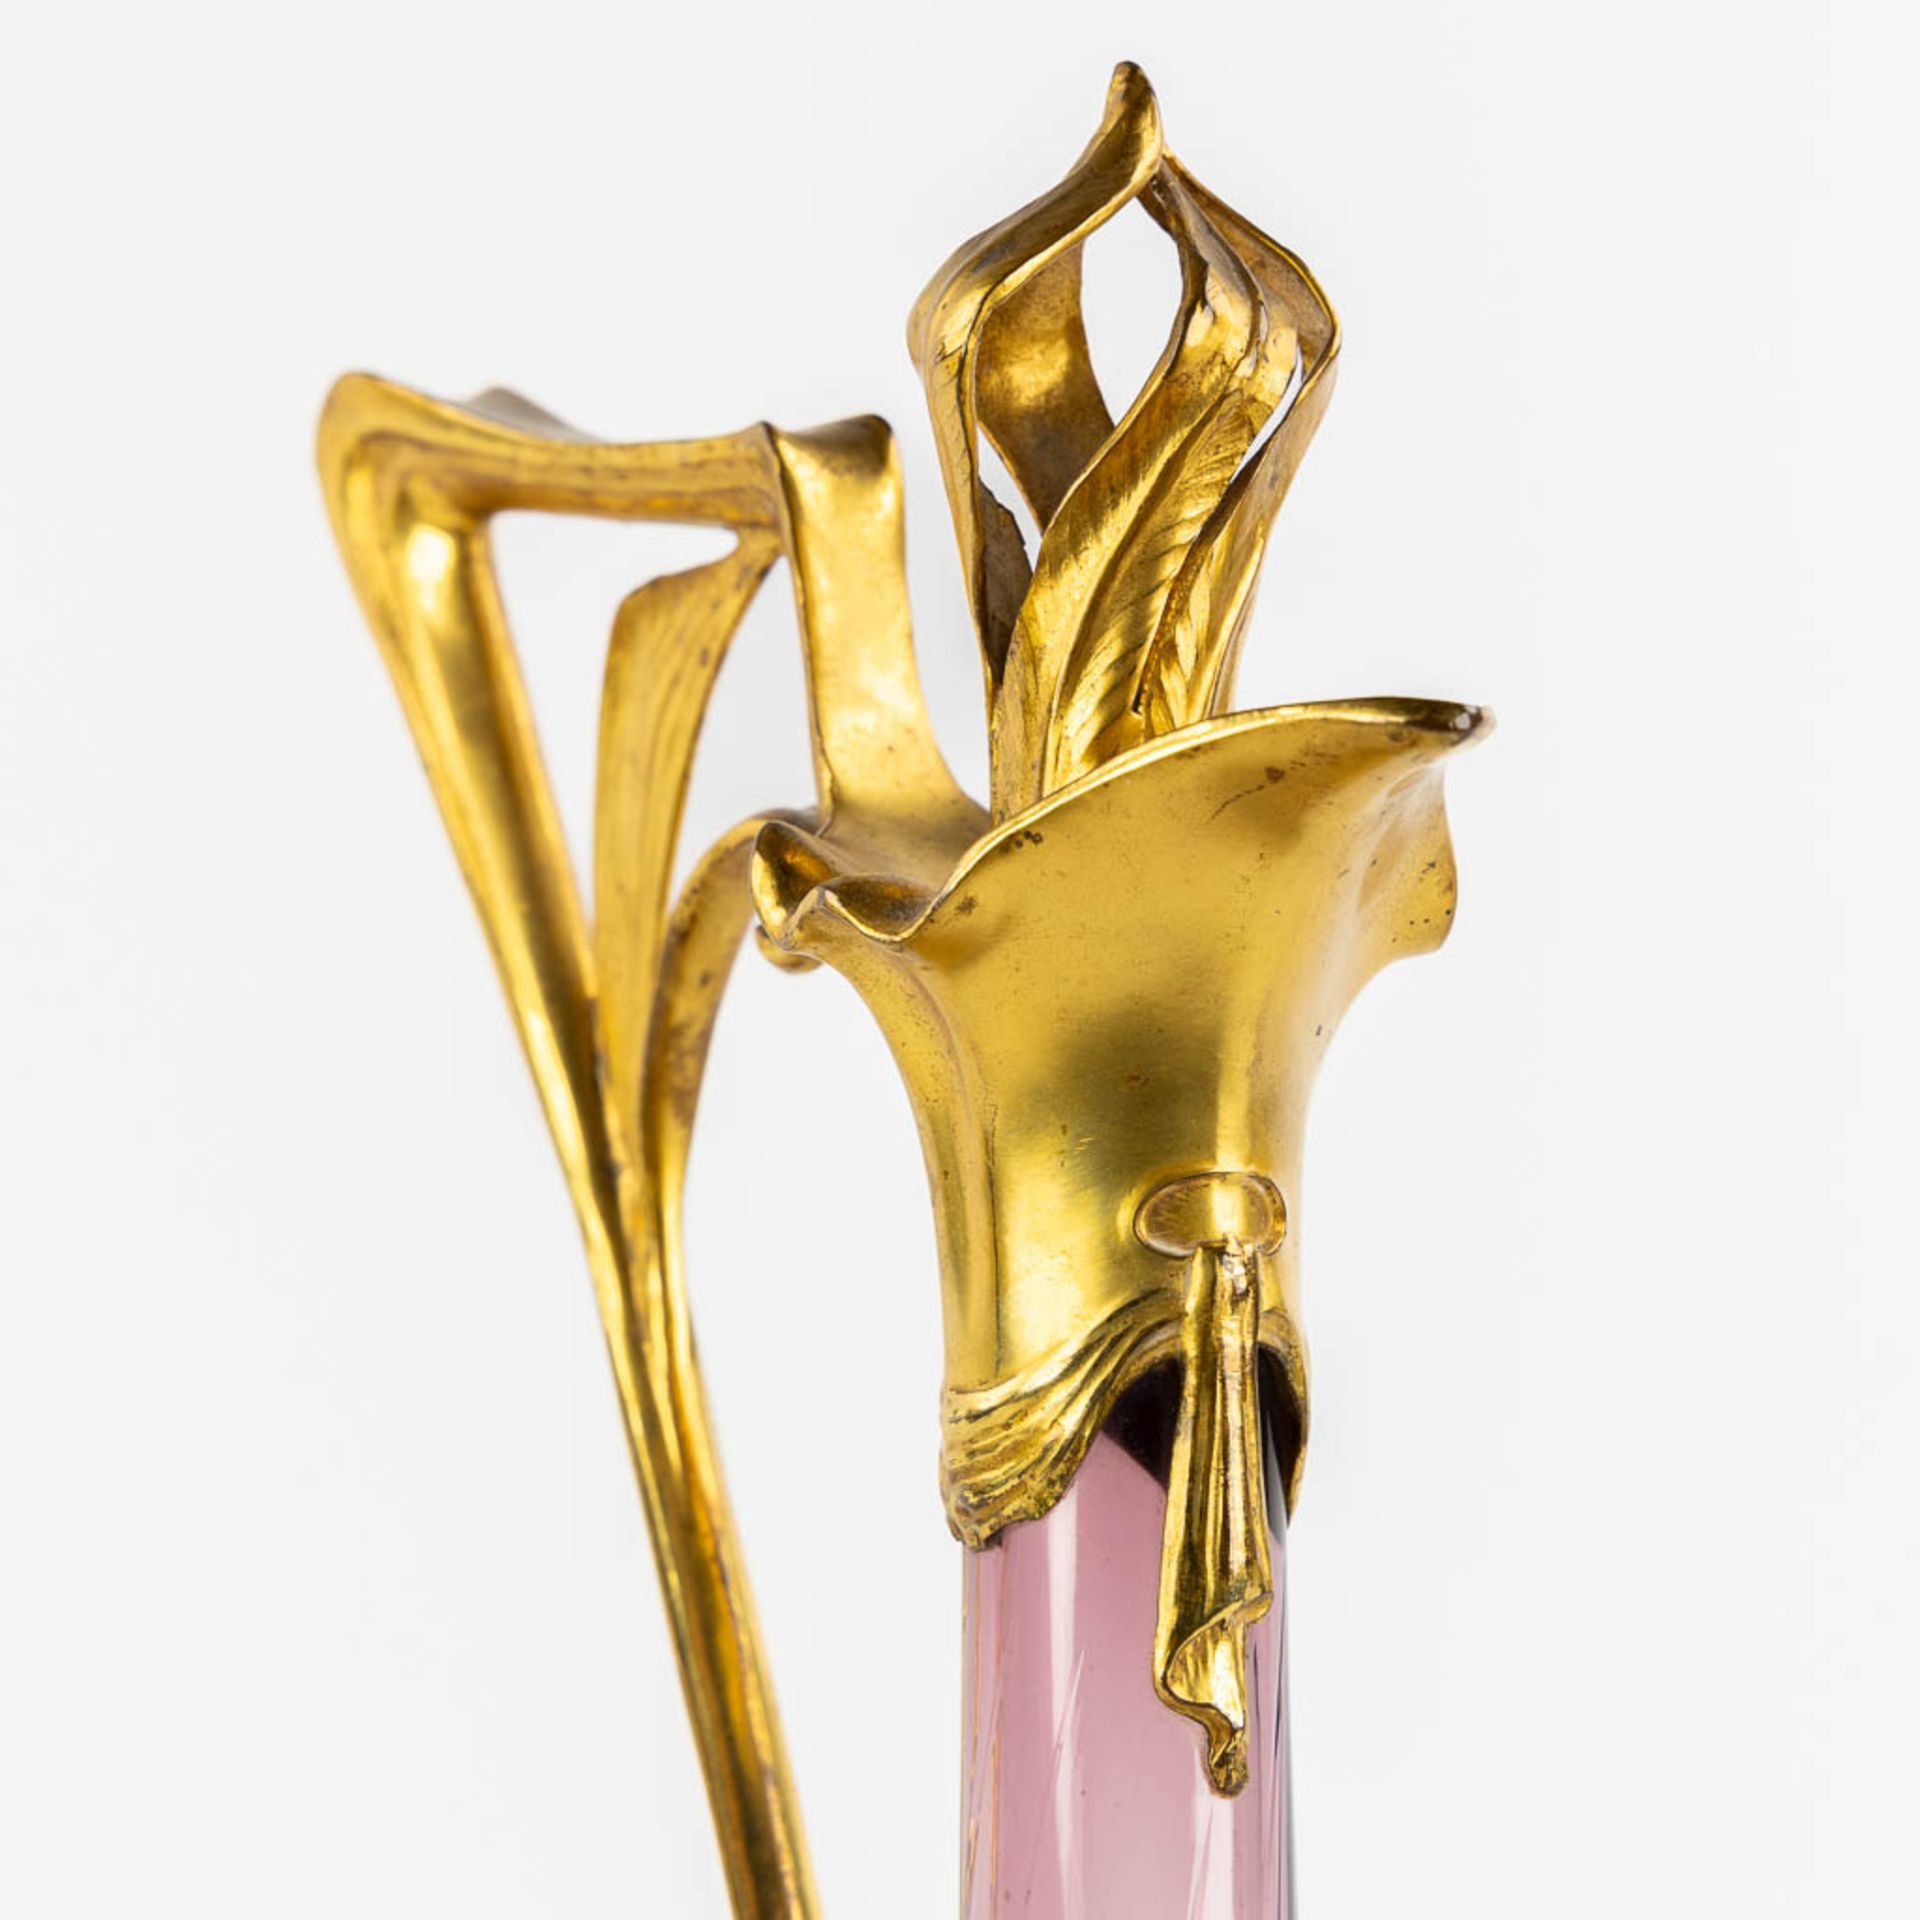 A pitcher, gilt metal and purple glass, Art Nouveau. (L:16 x W:20 x H:39 cm) - Image 10 of 11